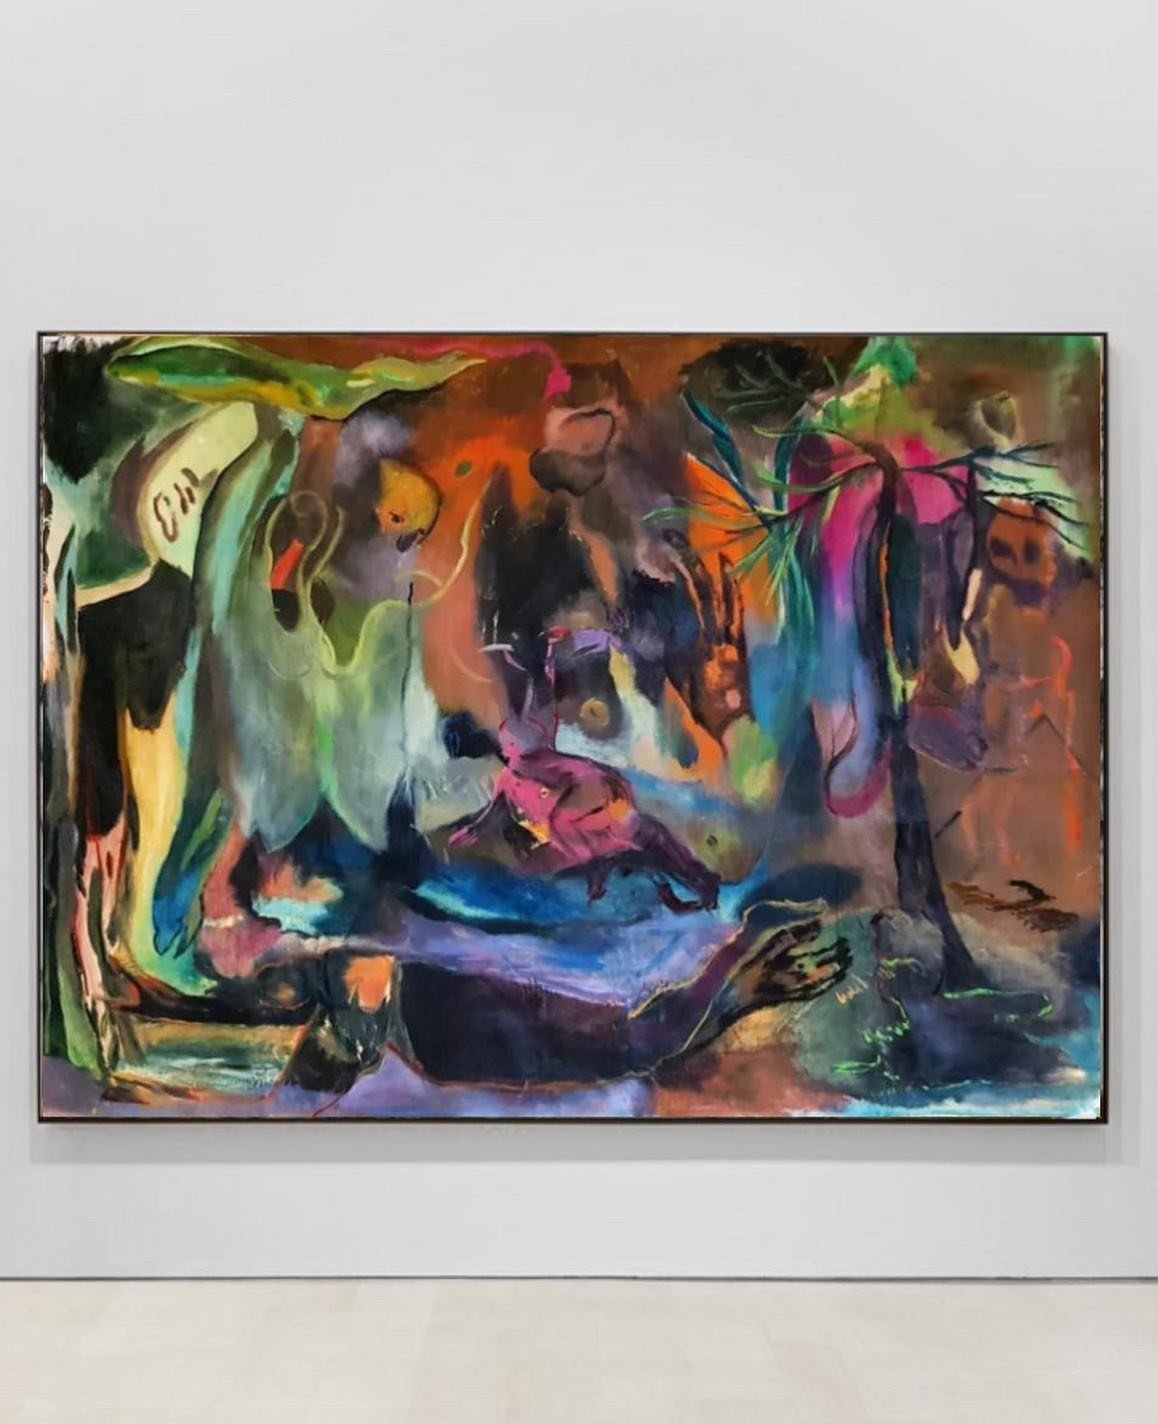 La Muerte (1 x 1,7m) by @denise__reichenbach. 💌 DM for feature
-
-
-
-
-
-
-
-
-
-
-
-
-
-
-
-
-
-
-
-
#painters #paint #art #arts #paintings
#contemporaryart
#contemporarypainting #painting #abstraction #oilpainting #watercolours #flowers#artwork #